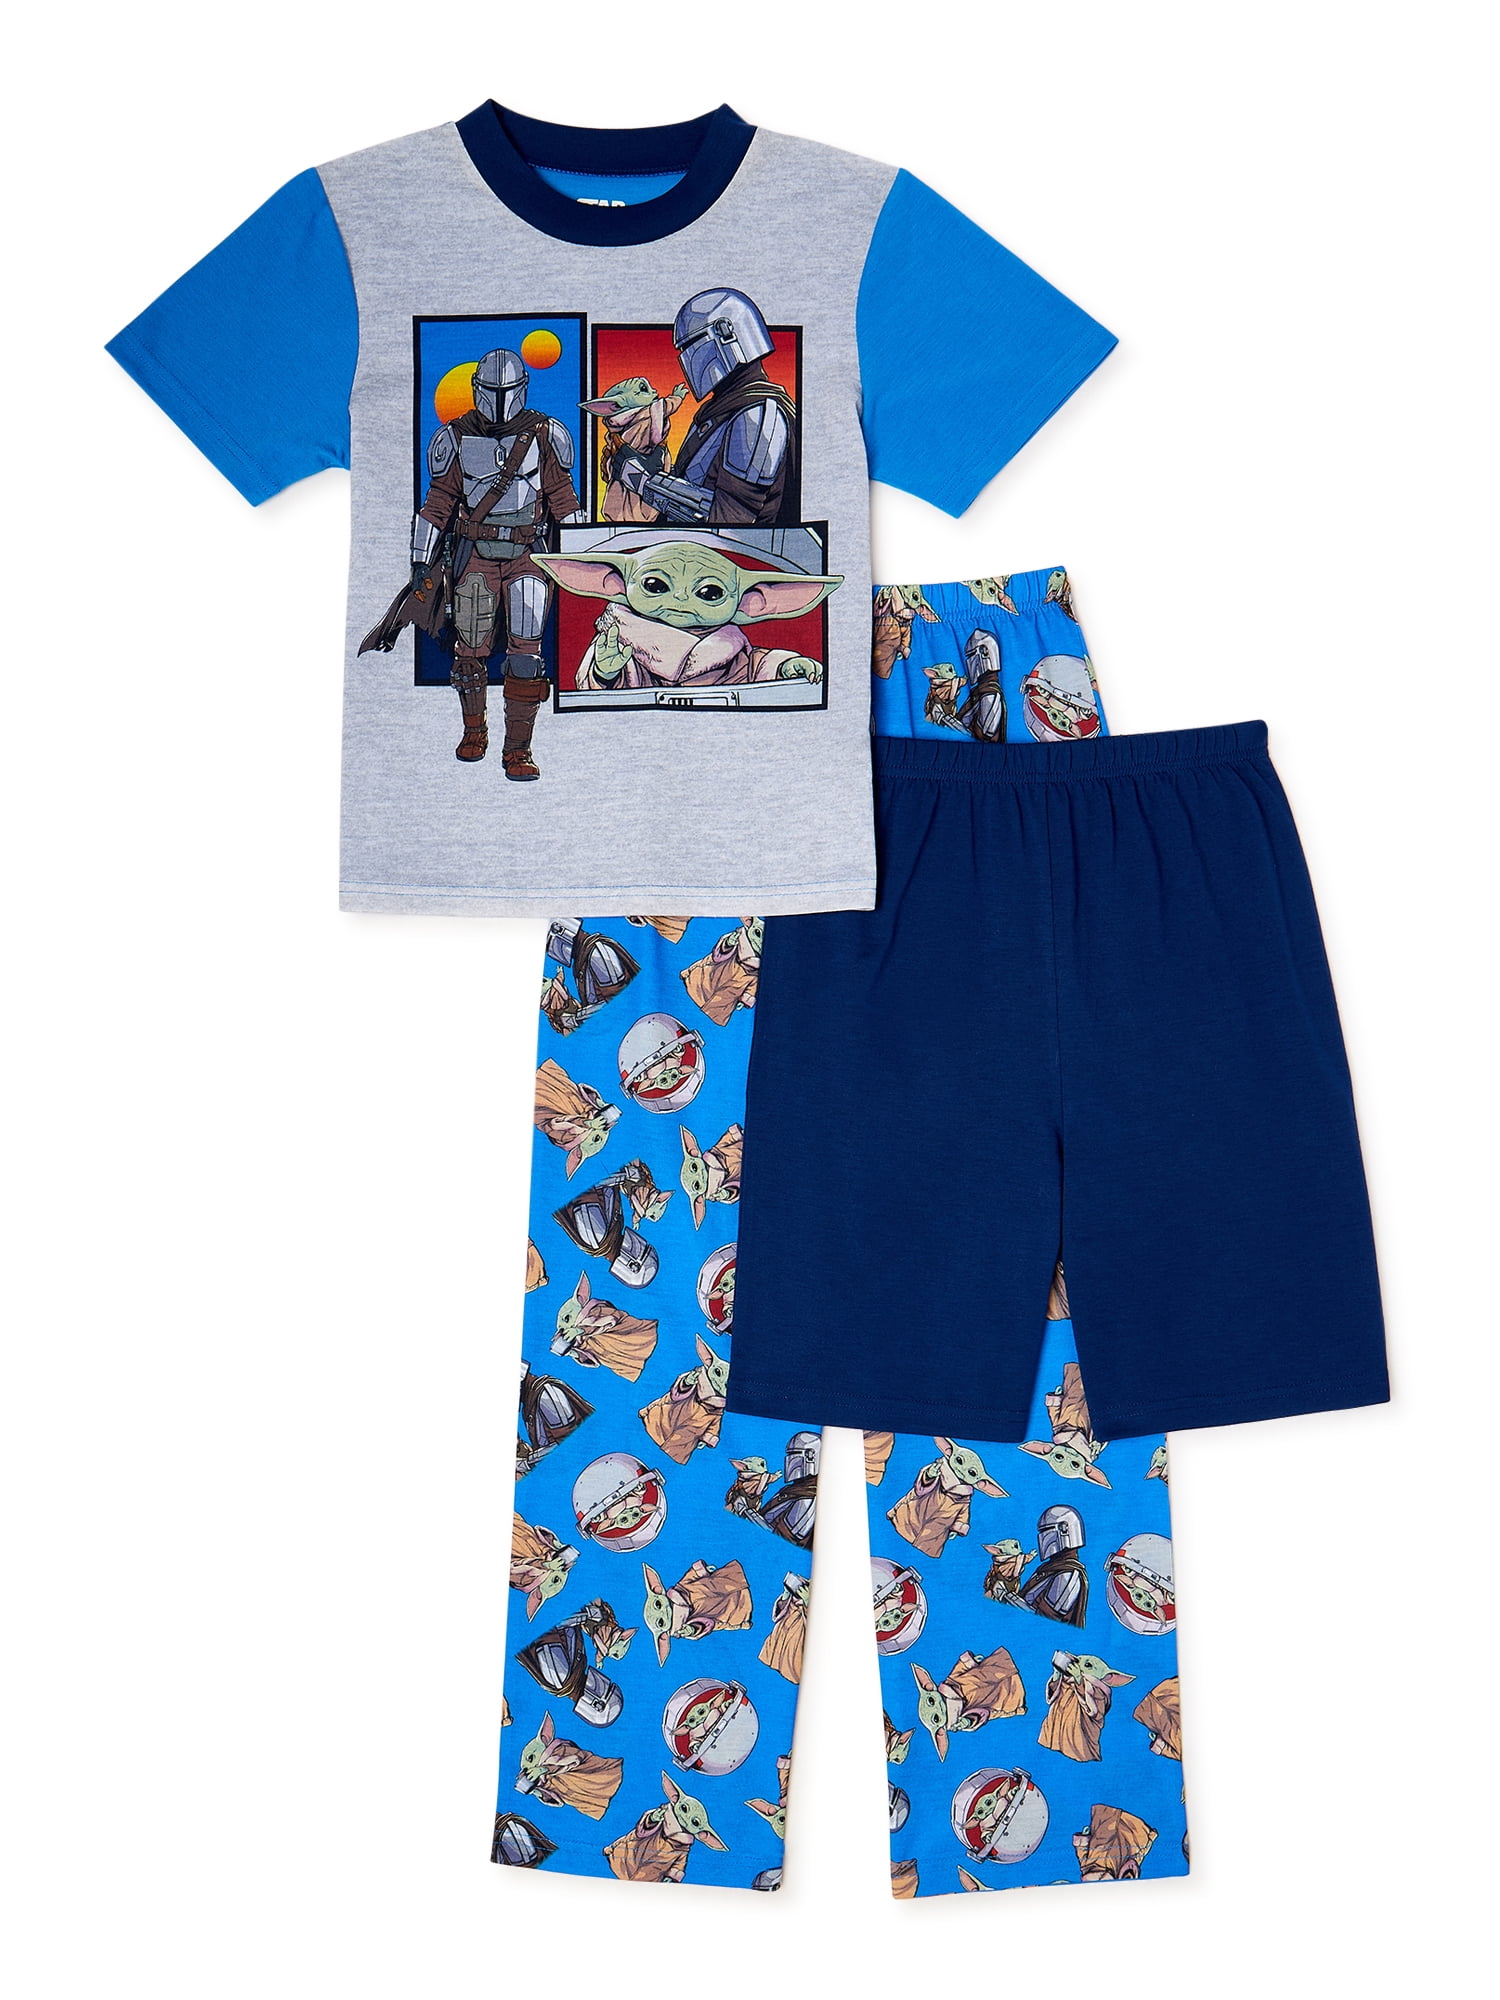 NWT Boys Two Piece Pajamas by Zone Pro Size  7 